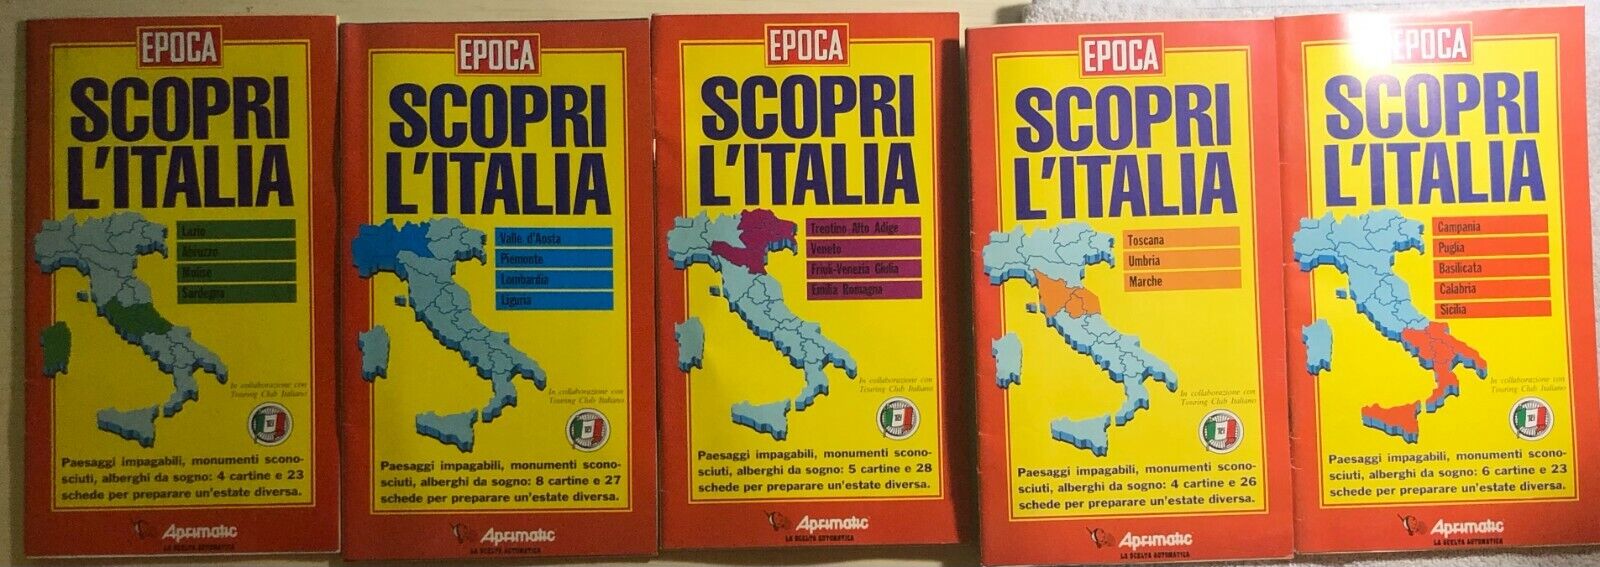 Scopri L'Italia 1-2-3-4-5 di Aa.vv.,  1992,  Epoca